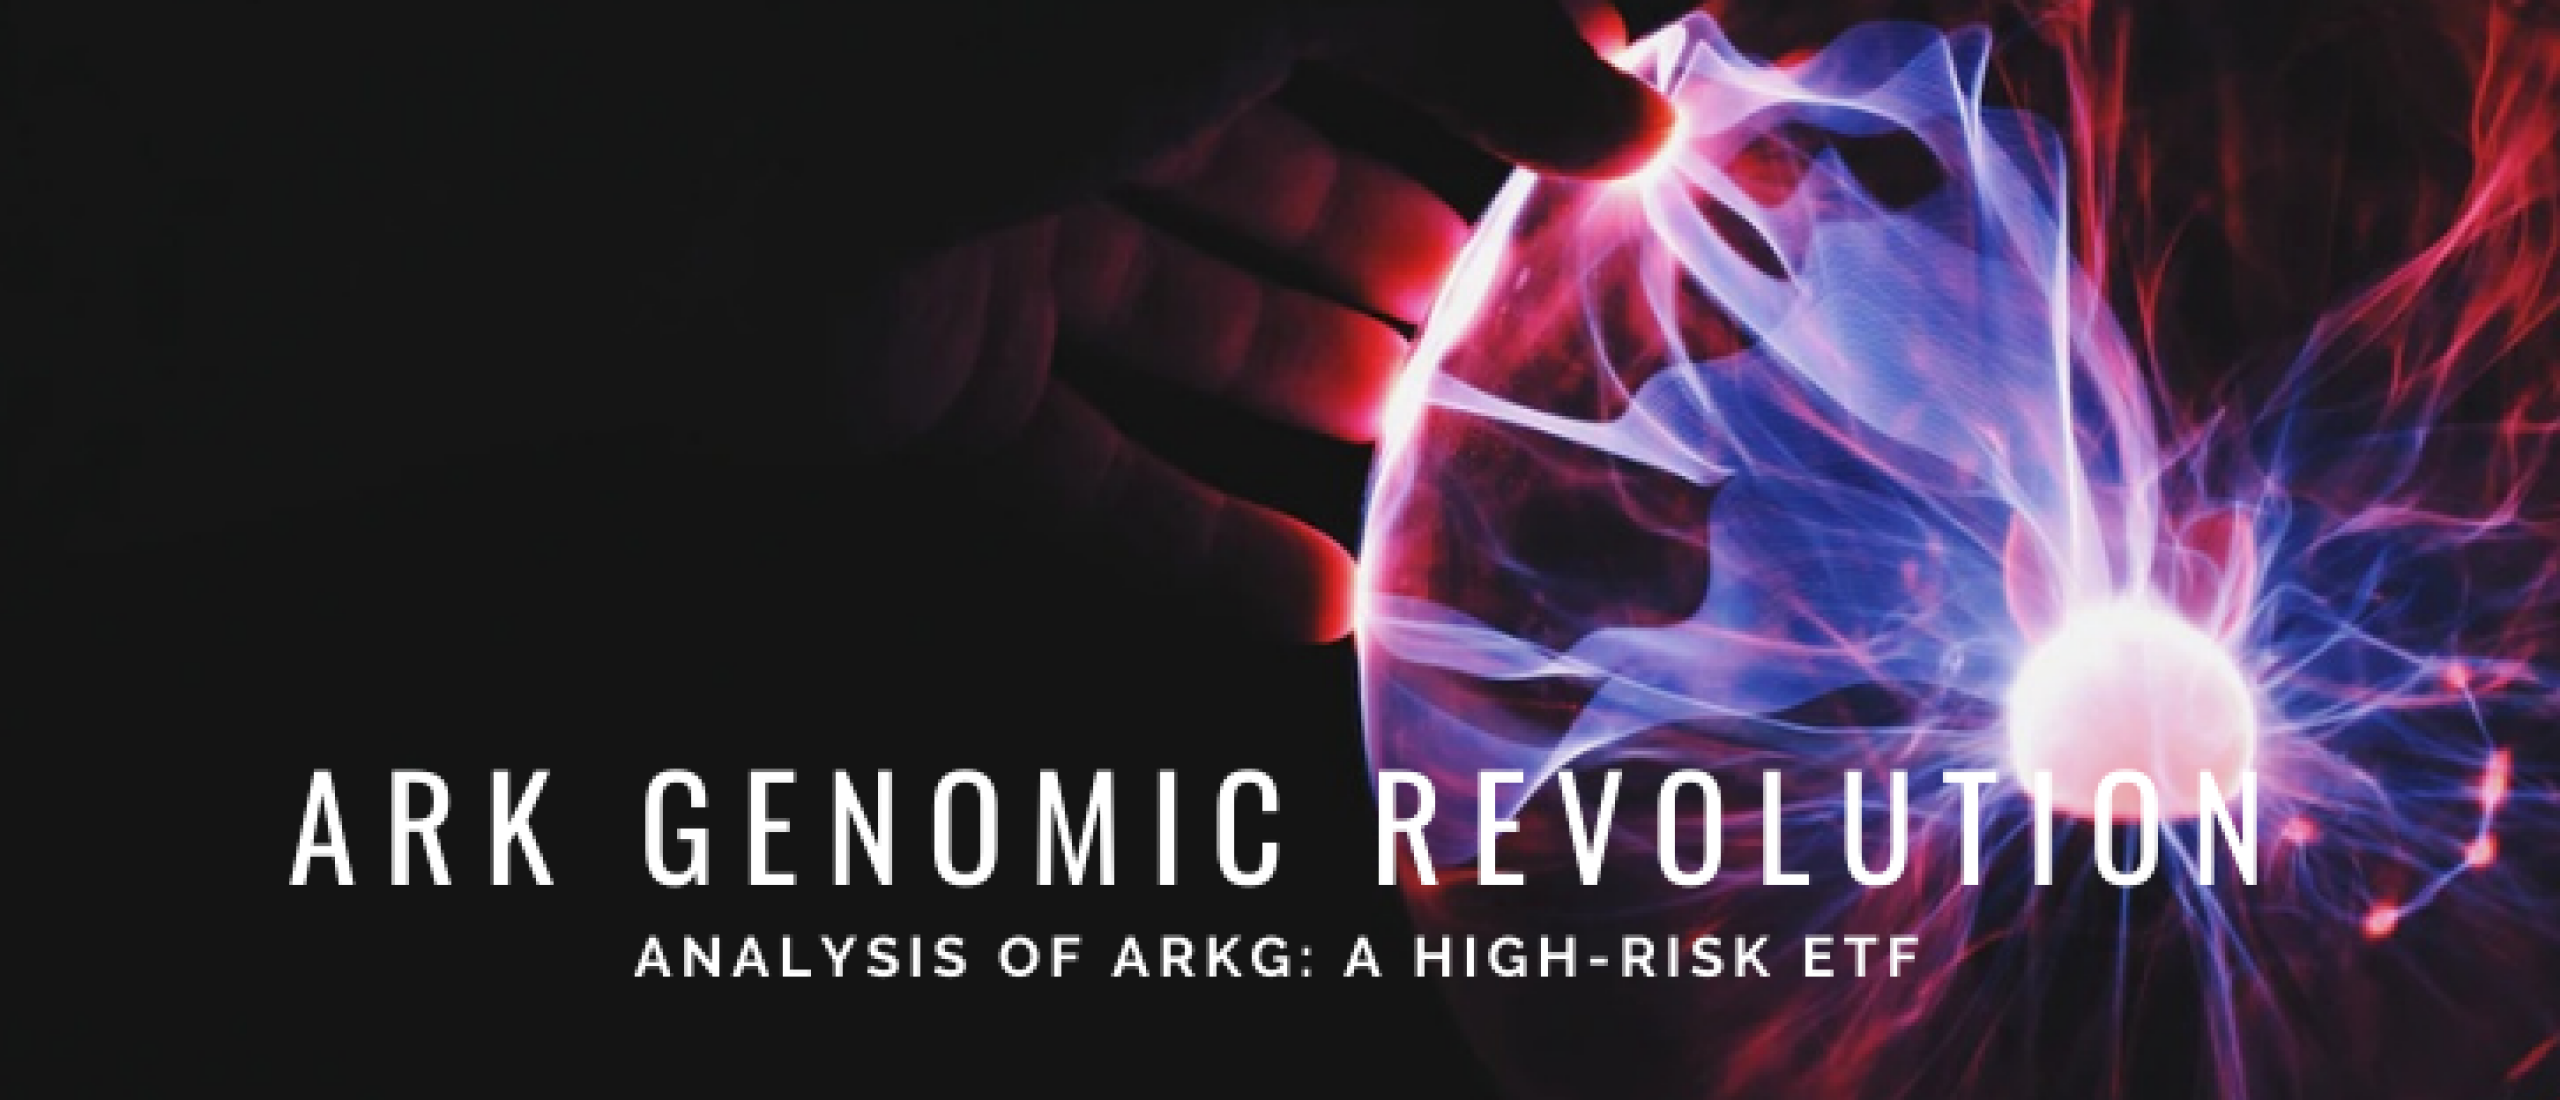 Buy ARK Genomic Revolution ETF? Risk & Return Analysis [2022]